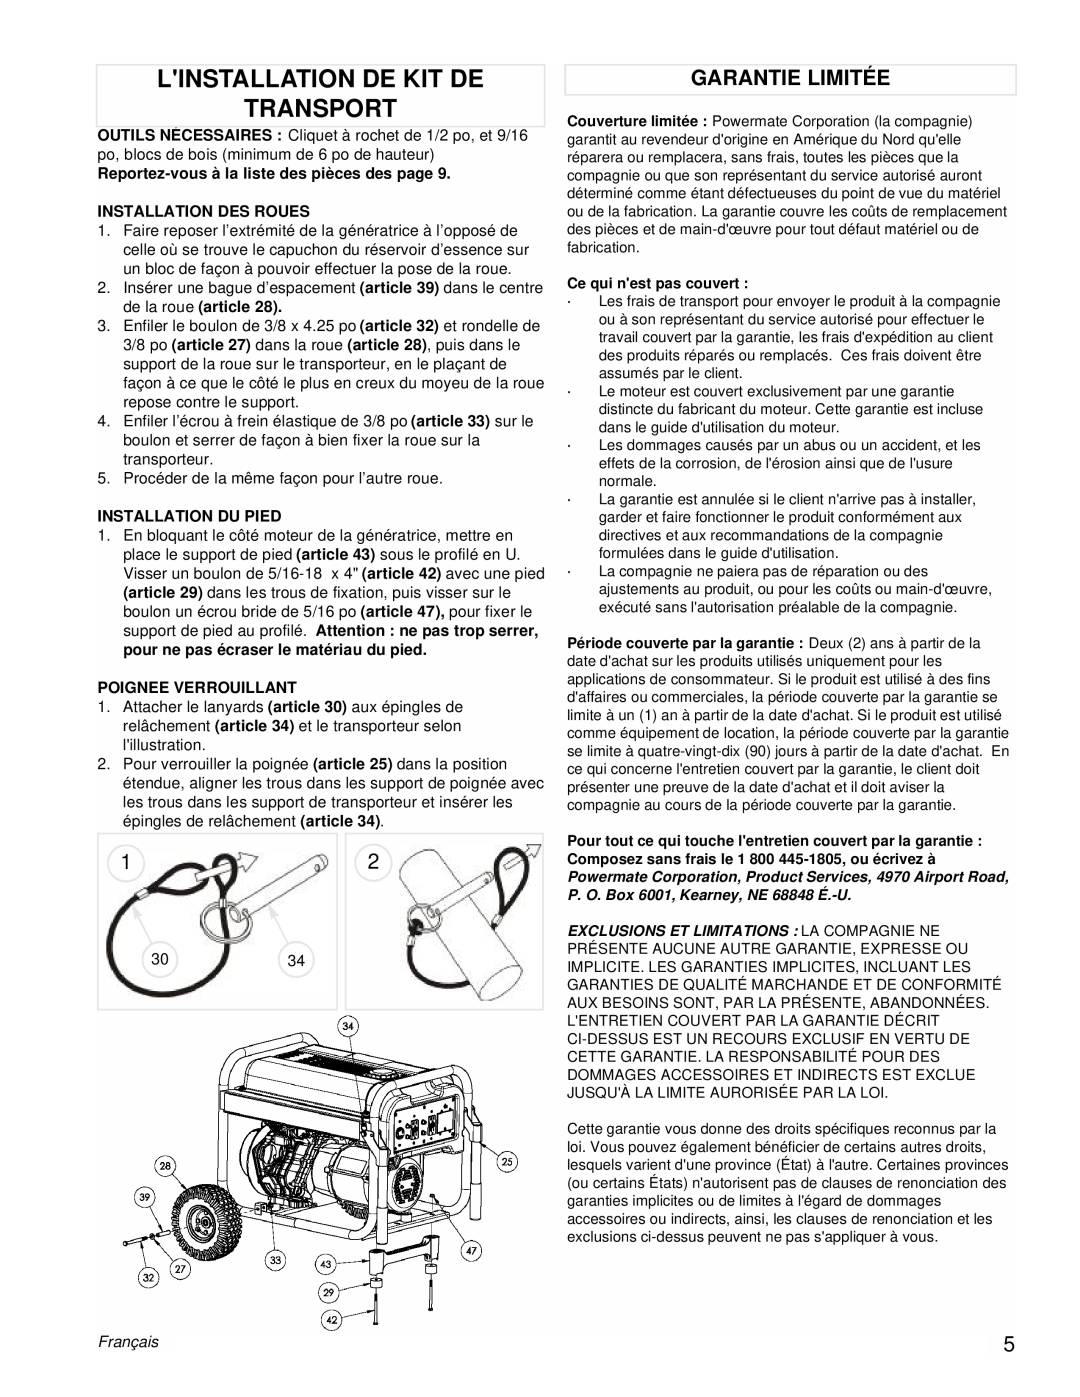 Powermate PM0606750 manual Linstallation De Kit De Transport, Garantie Limitée, Français 